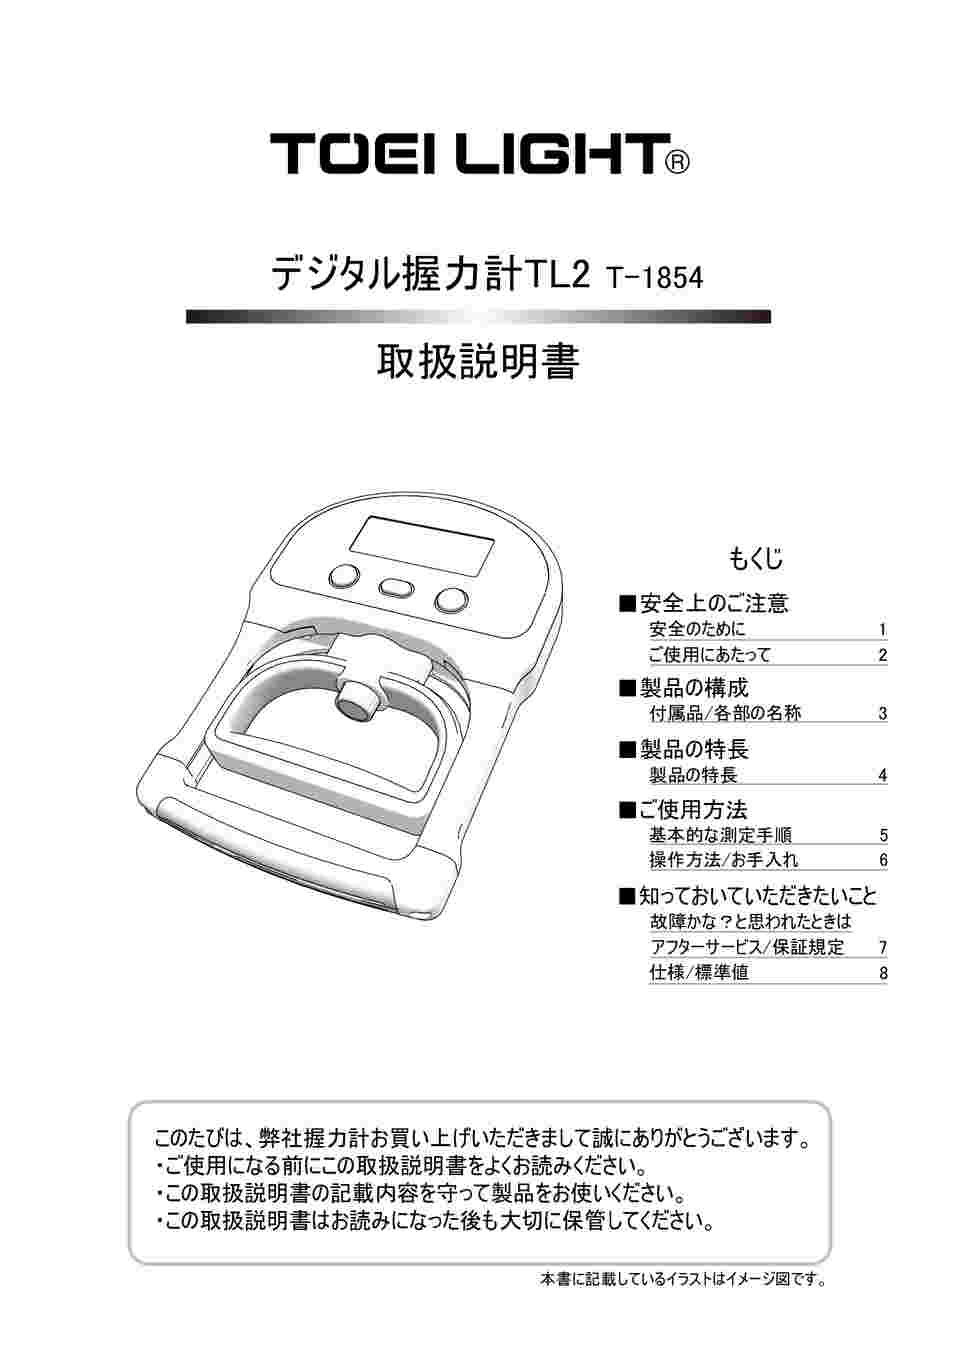 16716円 訳あり商品 TOEI LIGHT トーエイライト 握力計グリップD 日本製 体力測定 測定範囲5~100kg スメドレー式 T2177